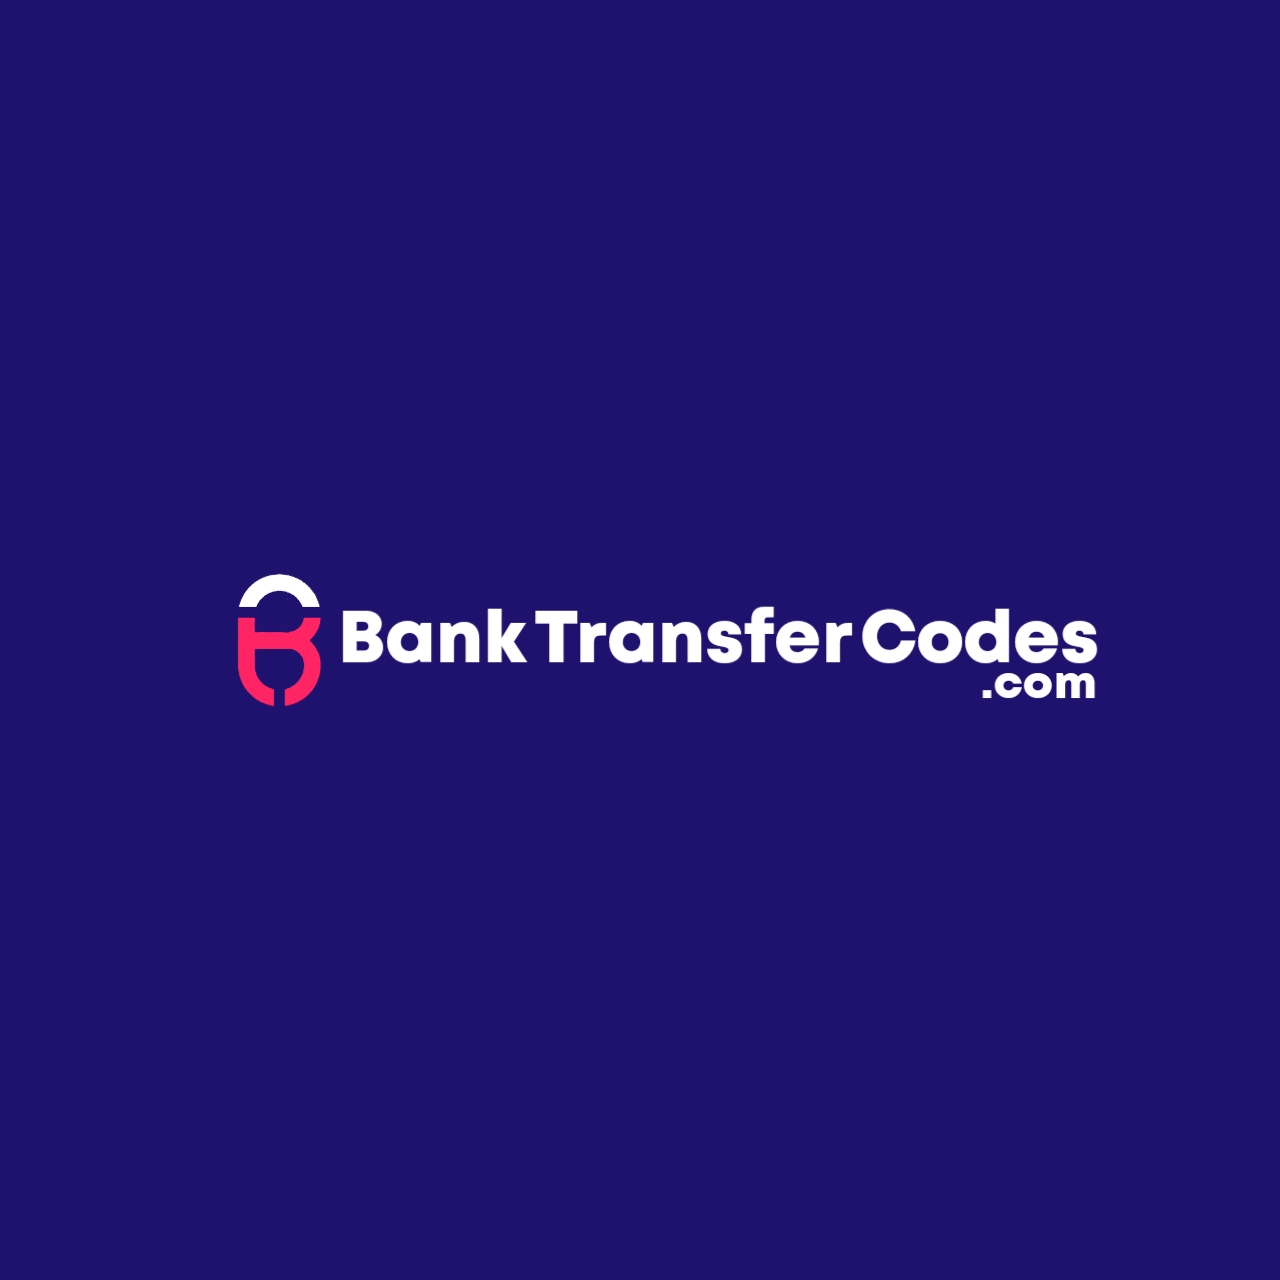 Bank Transfer Codes